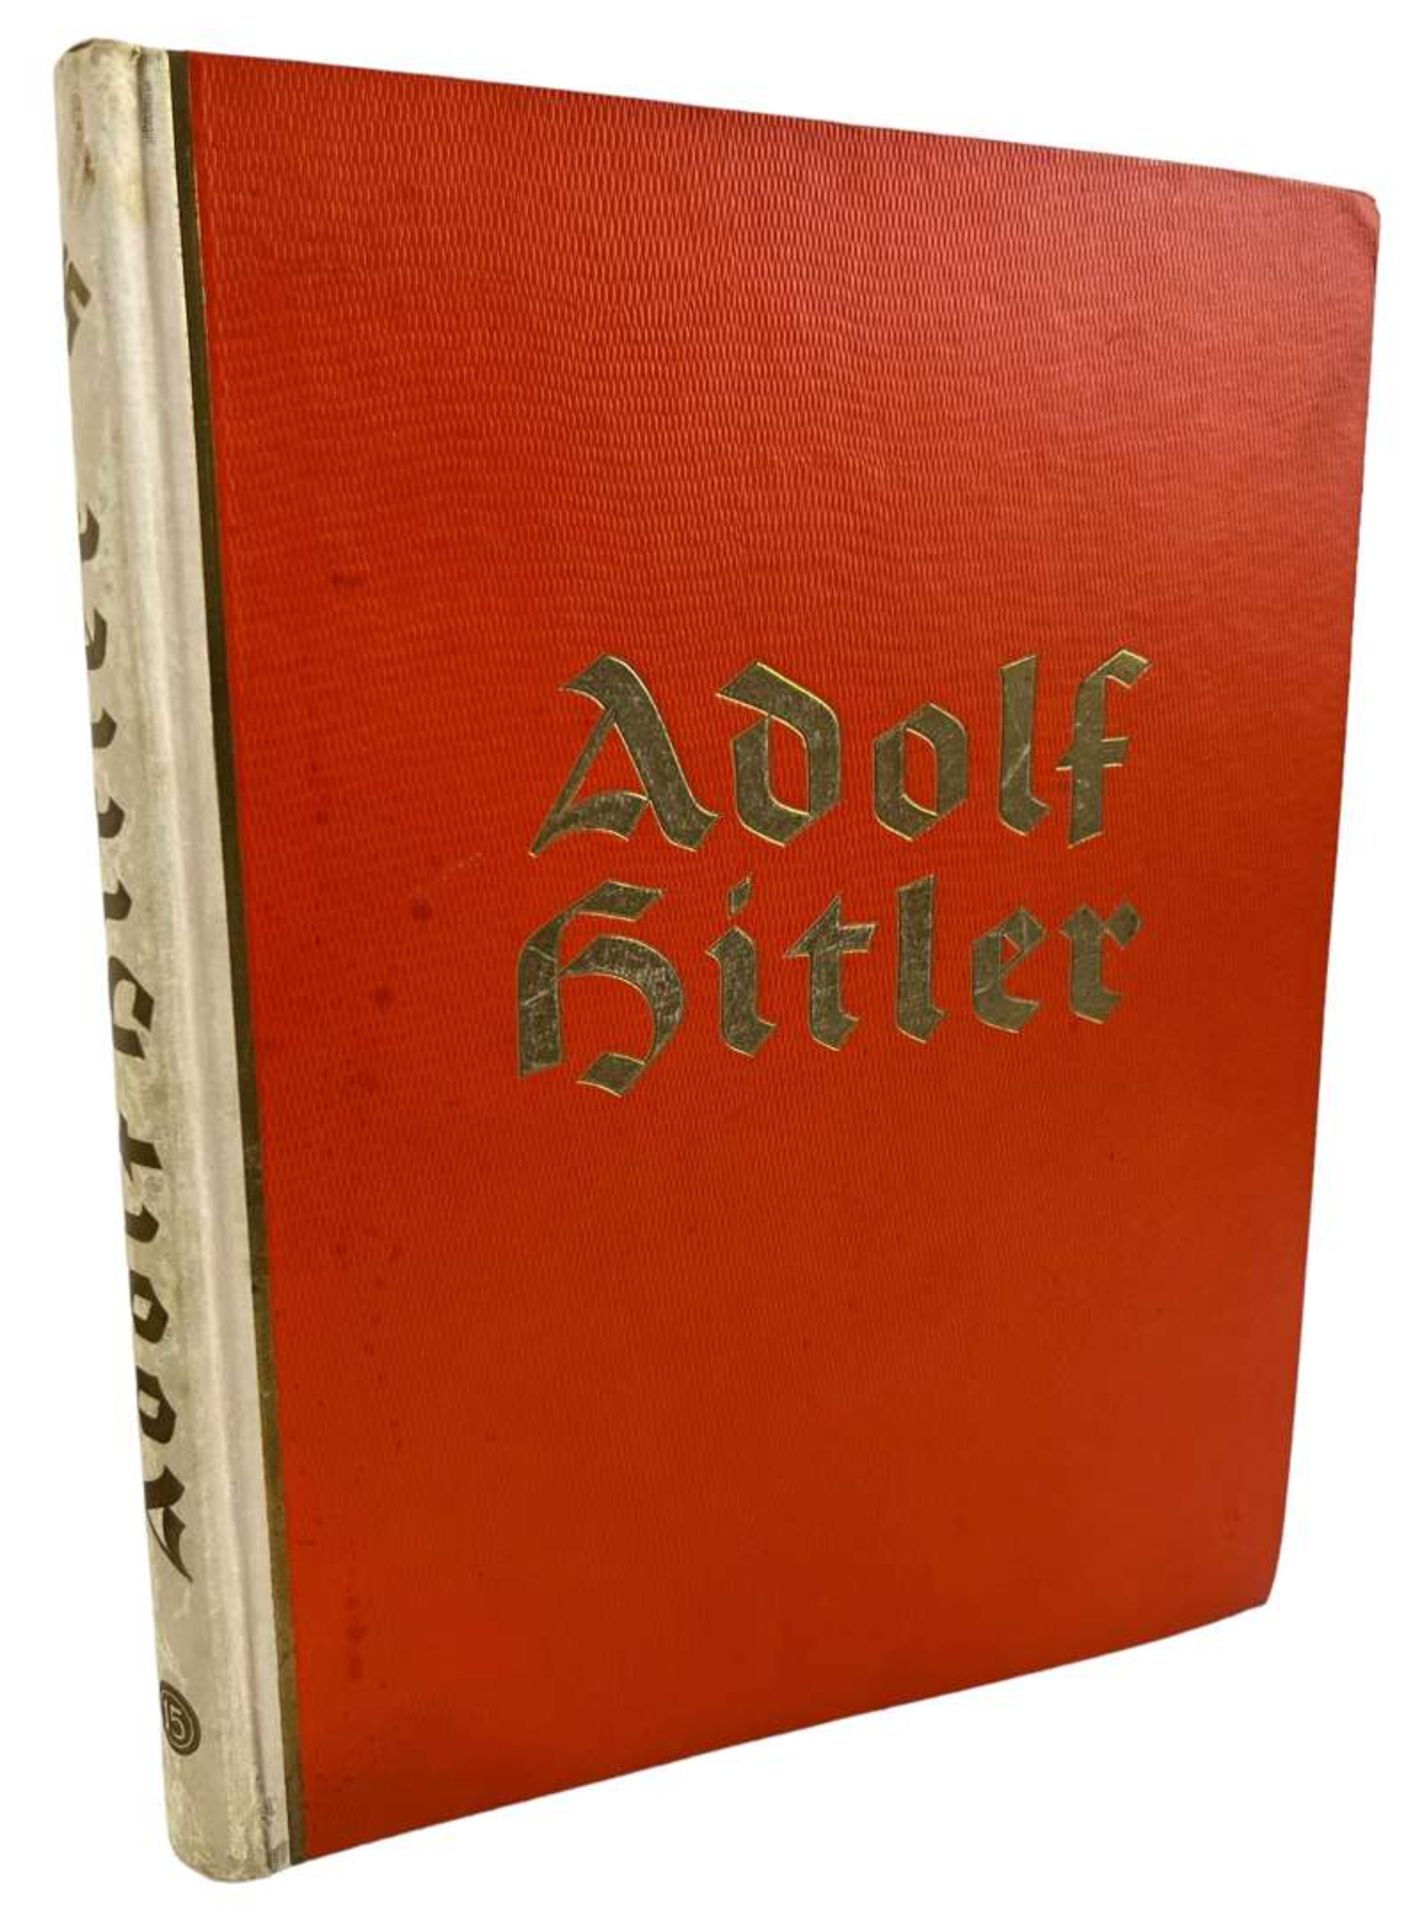 III German Reich Book "Adolf Hitler. Bilder aus dem Leben des Fuhrers", 1936